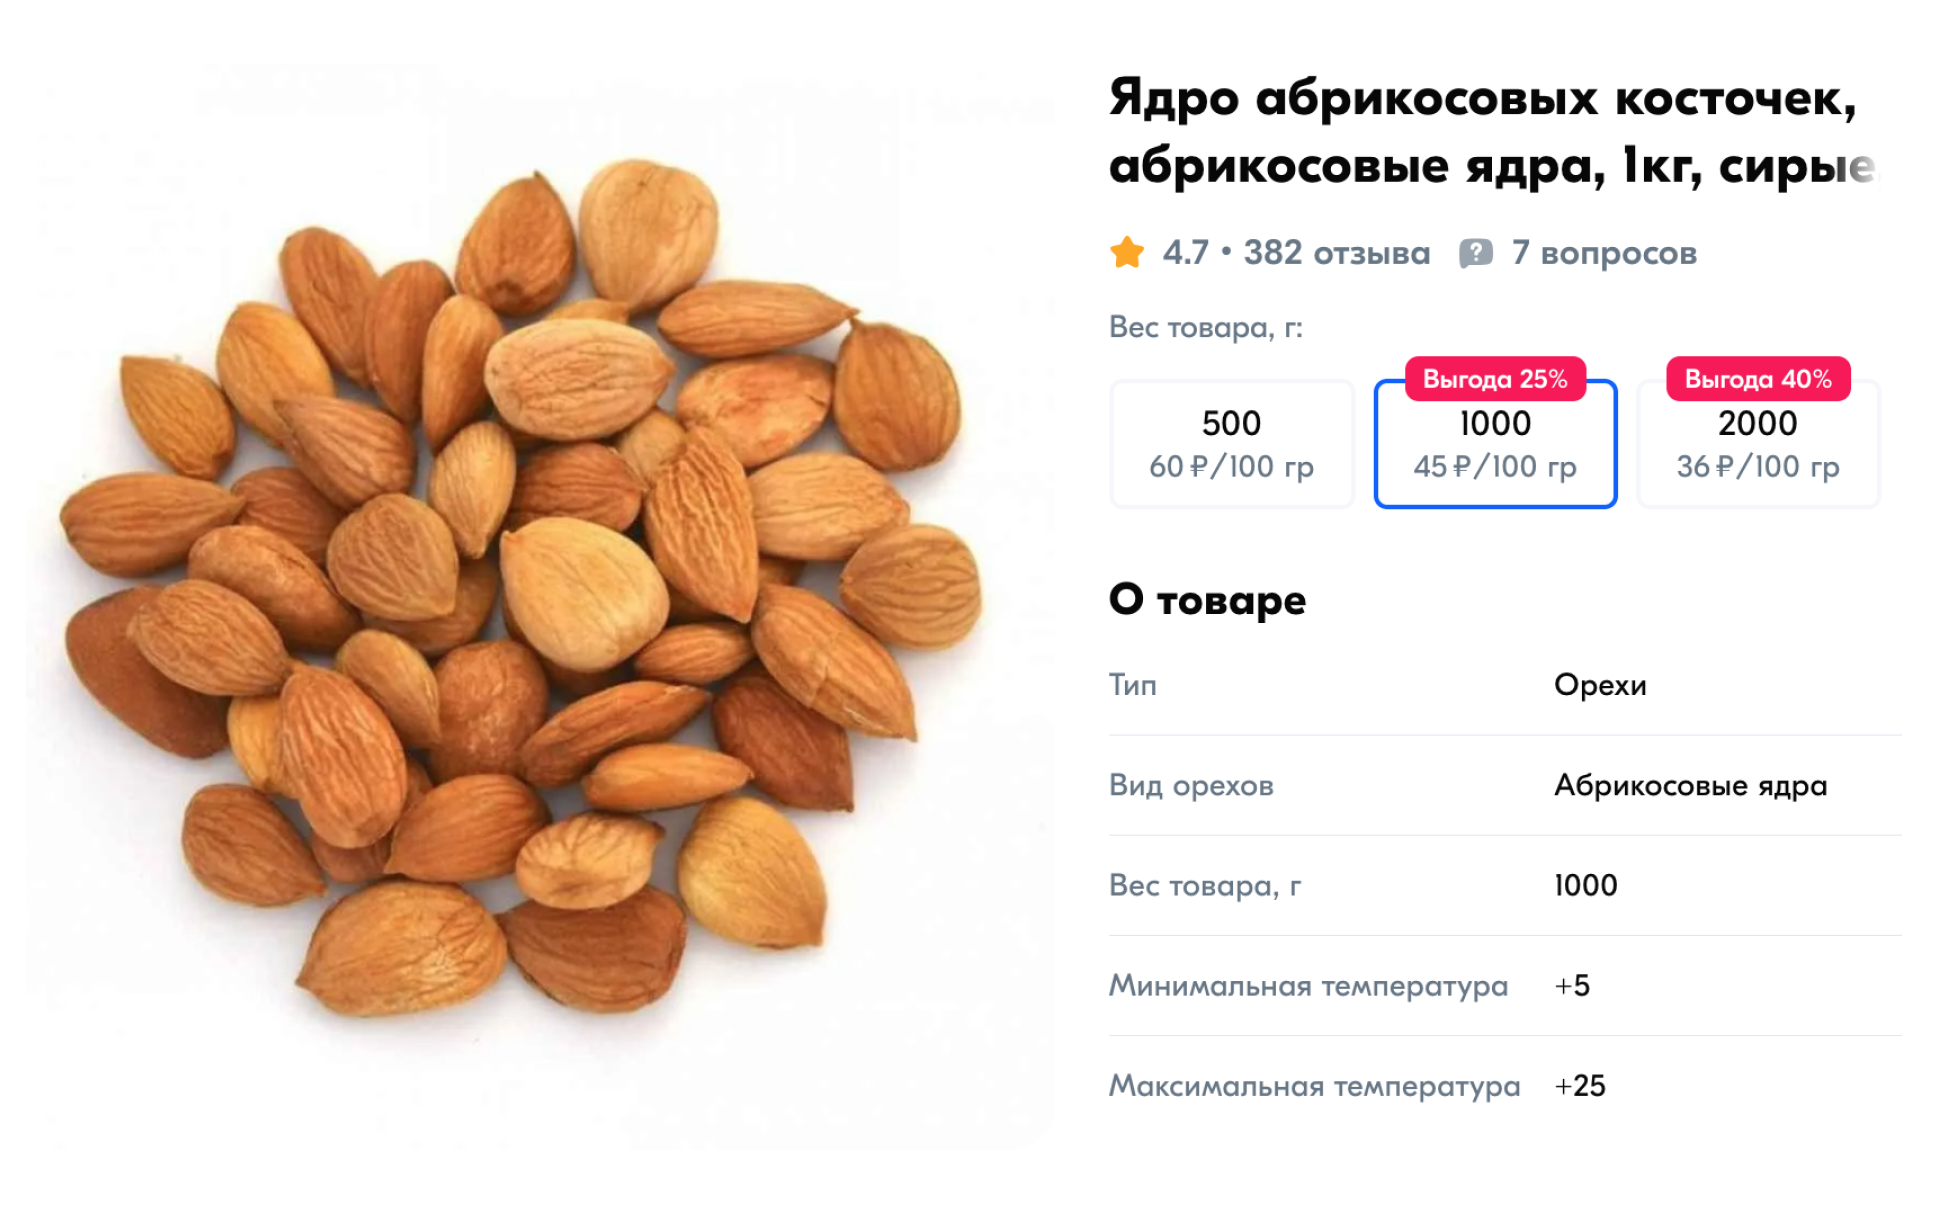 Сырые ядра абрикосовых косточек из Таджикистана. Не указан ни сорт, ни горький он или сладкий. Источник: ozon.ru